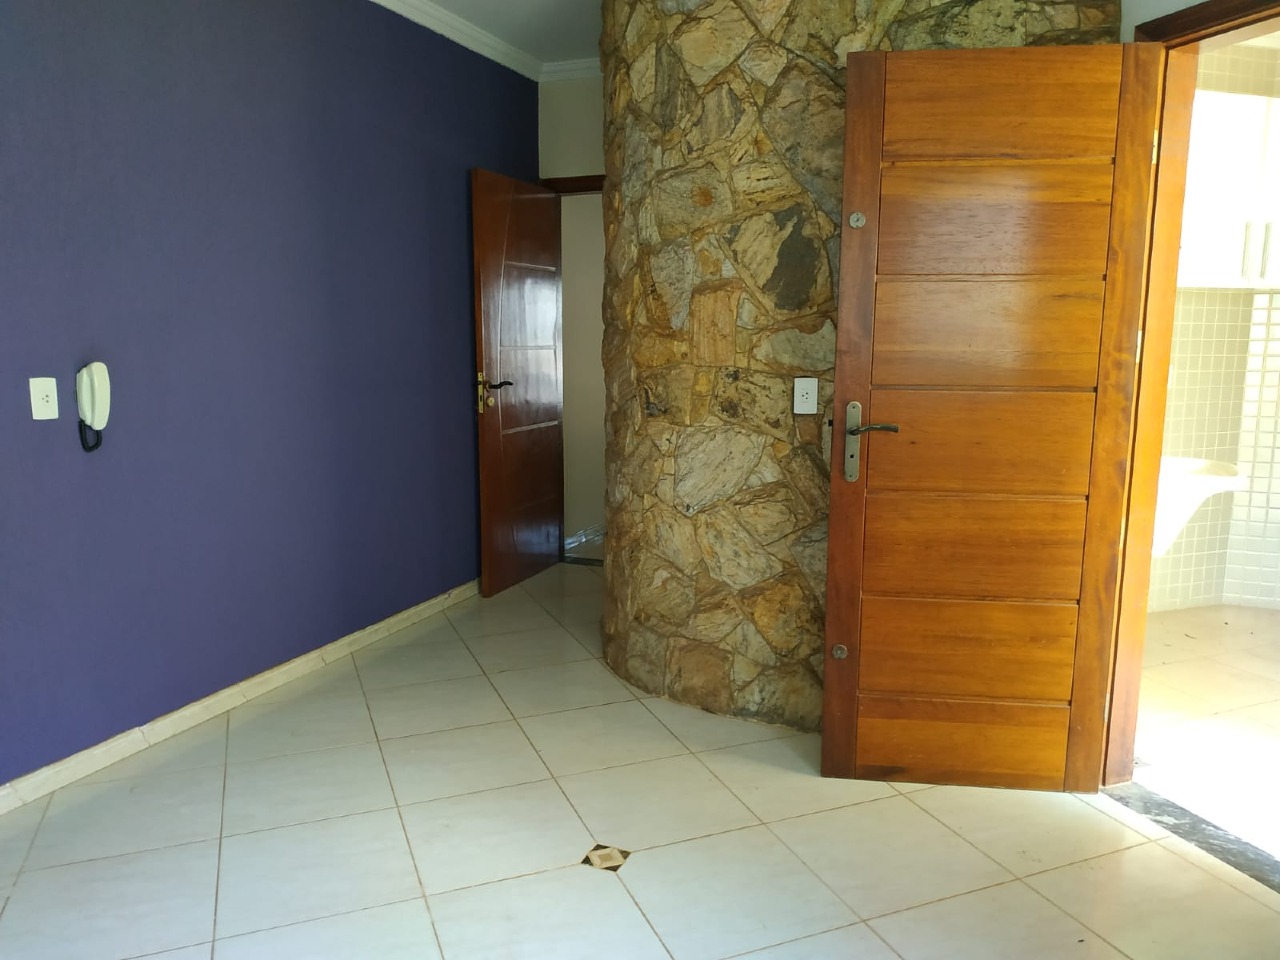 Casa para alugar, 3 quartos, 1 suíte, 2 vagas, no bairro Santa Maria em Rio das Pedras - SP